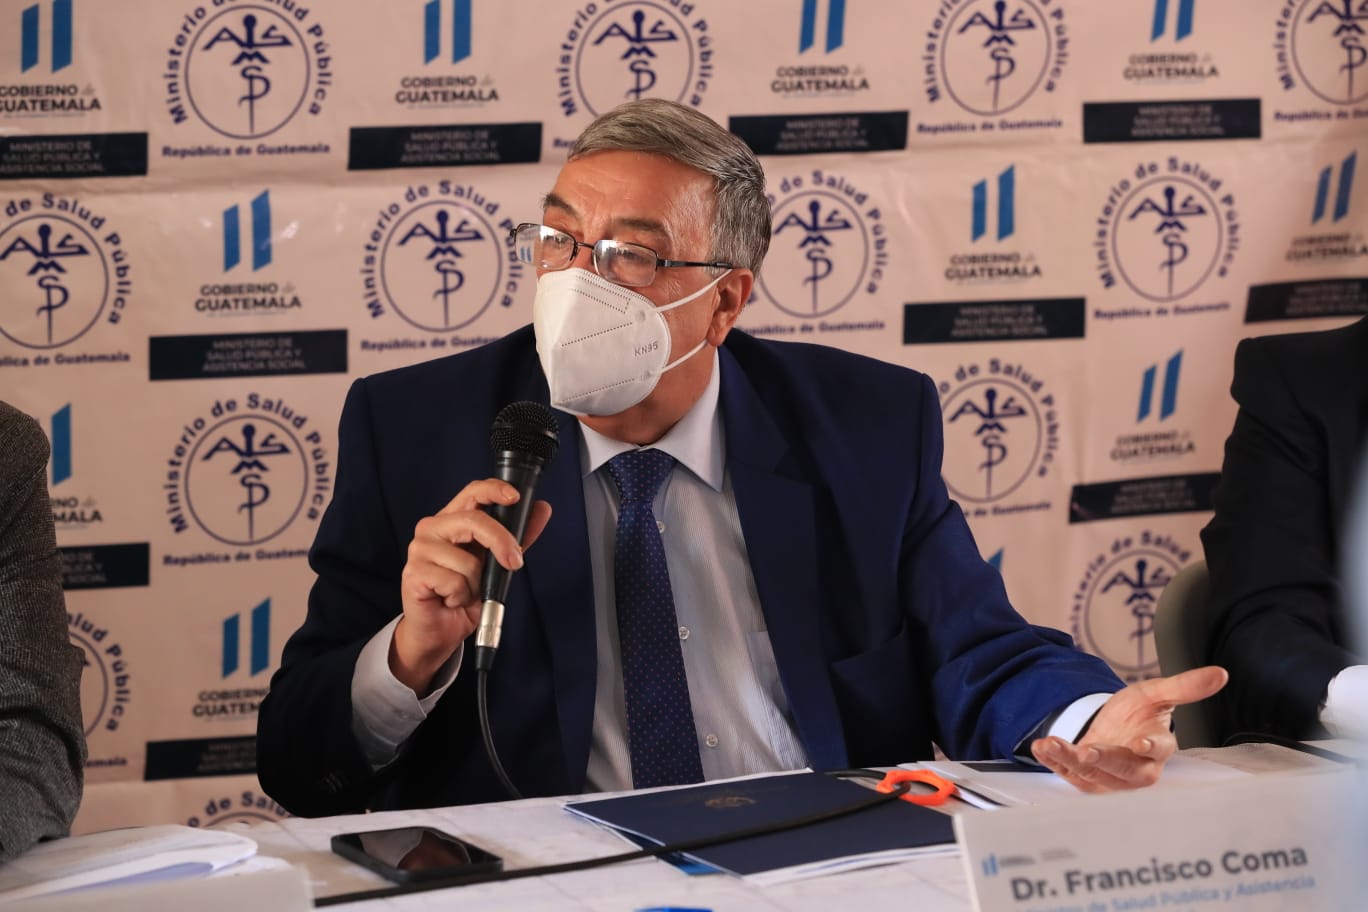 Francisco Coma, ministro de Salud, es el tercer médico al frente de la cartera durante la administración de Alejandro Giammattei. Fotografía: Prensa Libre (Élmer Vargas).